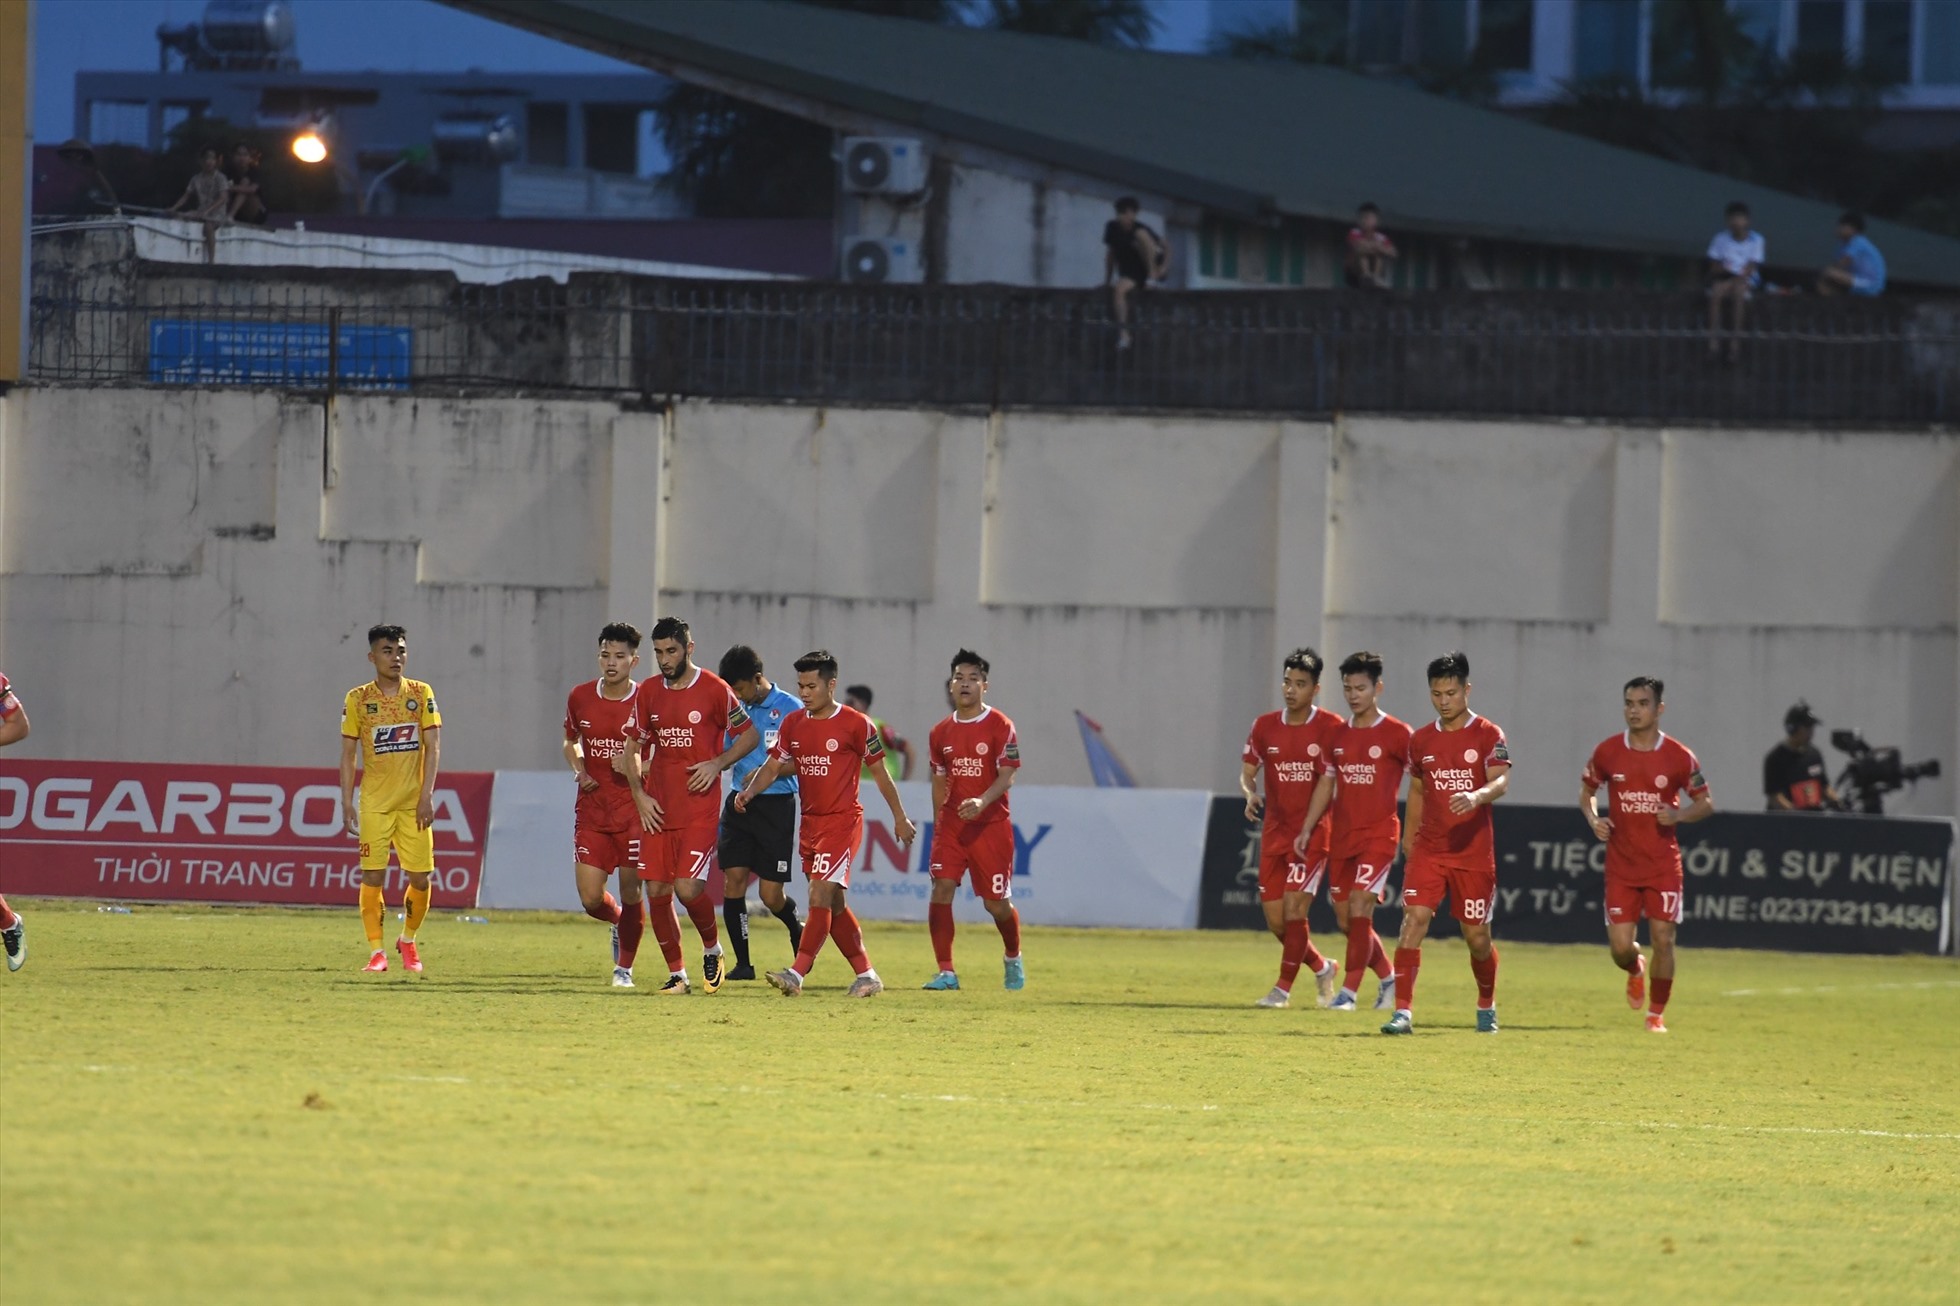 Sang hiệp 2, Viettel bất ngờ có bàn thắng vươn lên dẫn trước 2-1 nhờ công của cầu thủ vào sân thay người Dương Văn Hào.